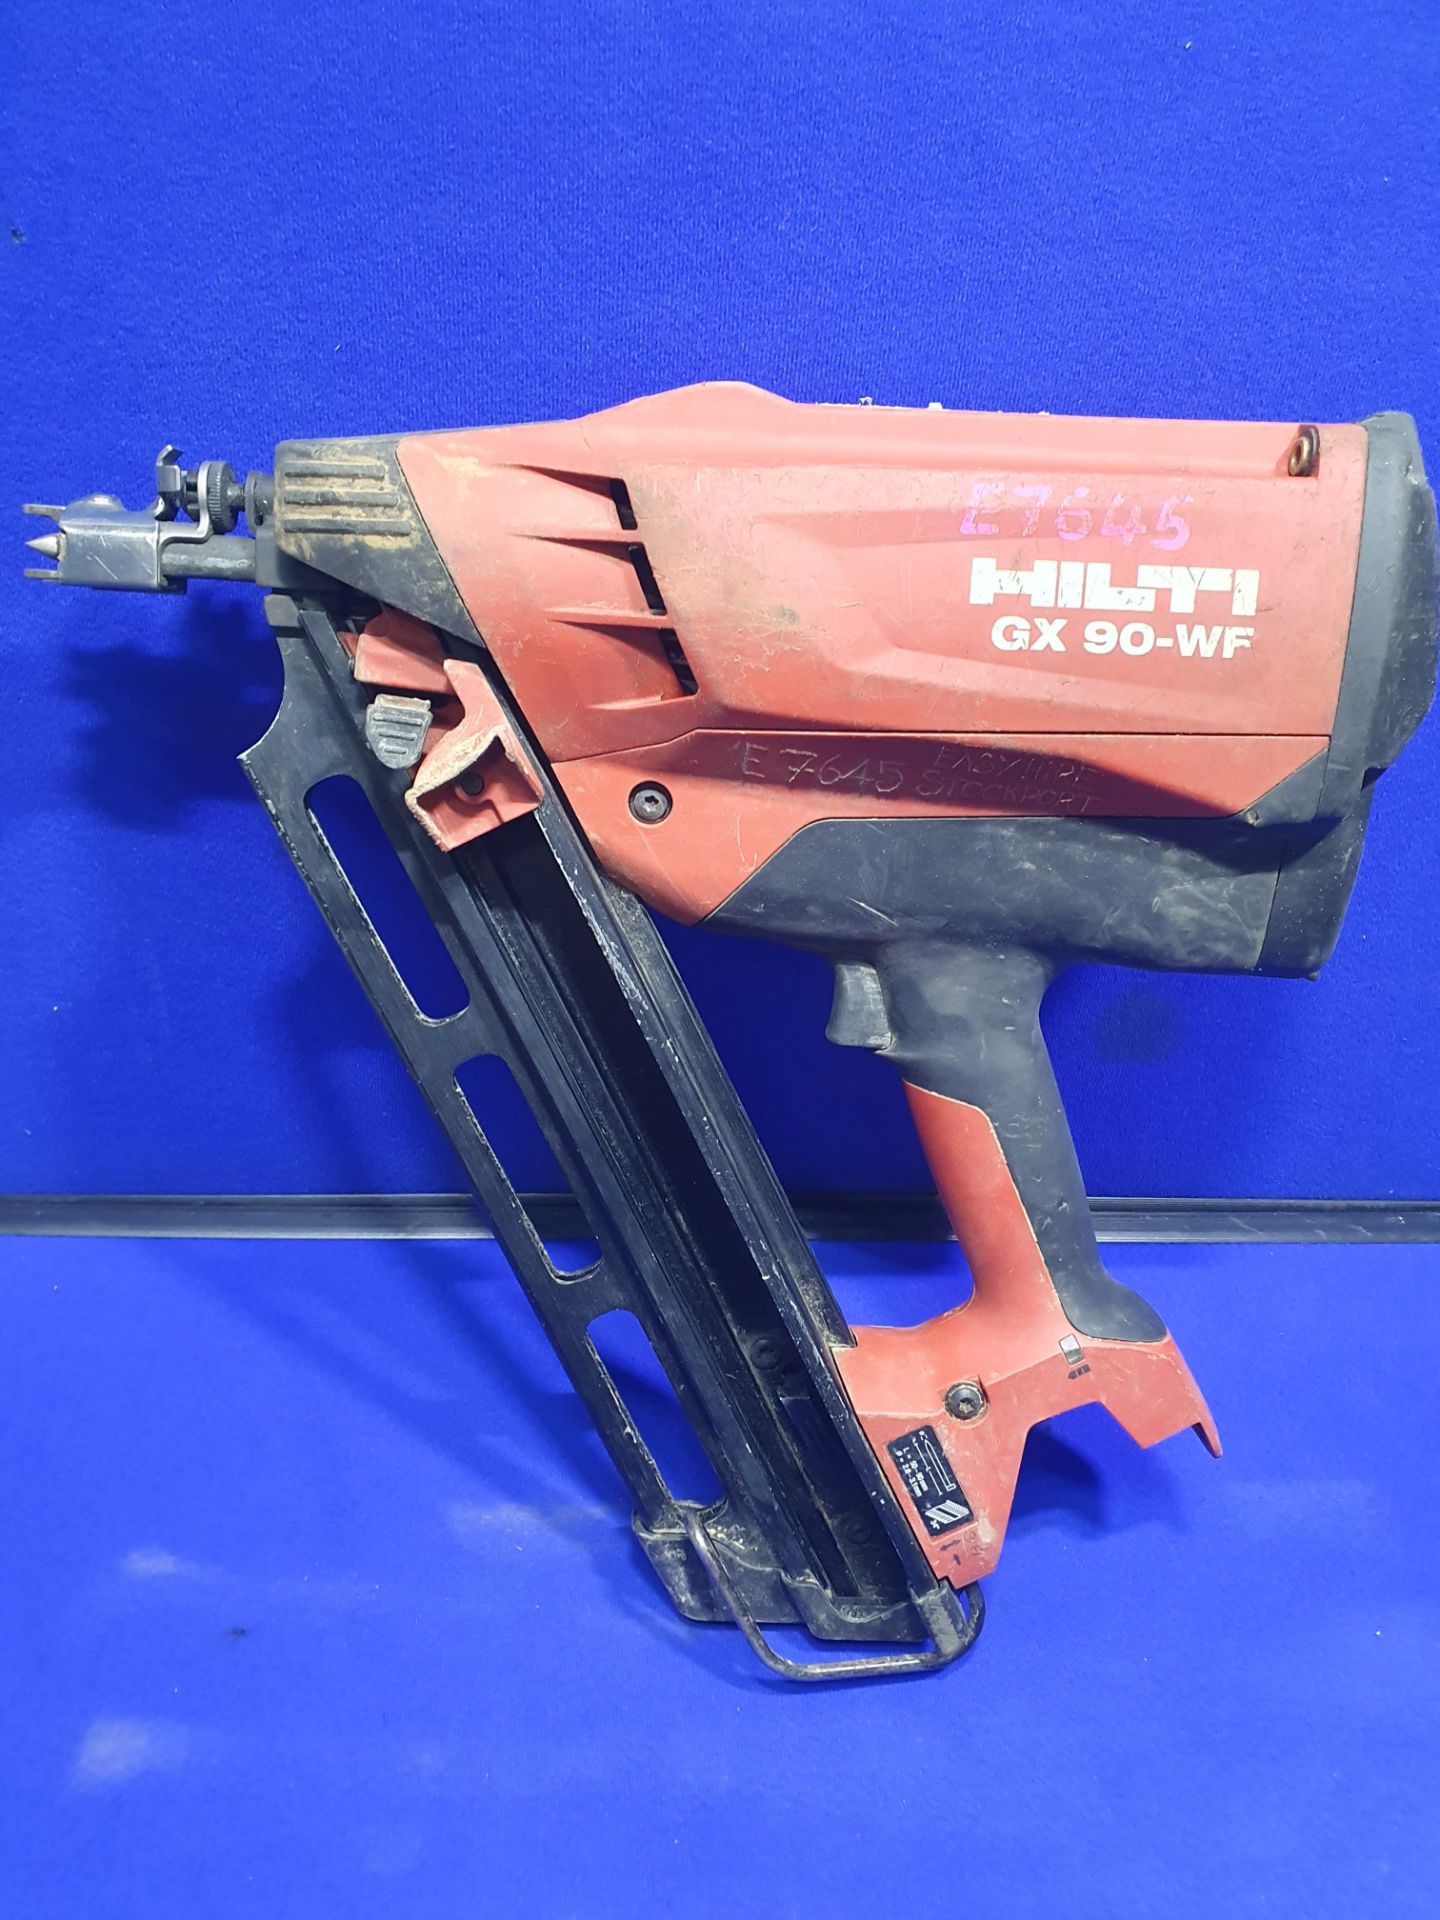 Hilti GX 90-WF Framing Nail Gun in Case - Image 6 of 8